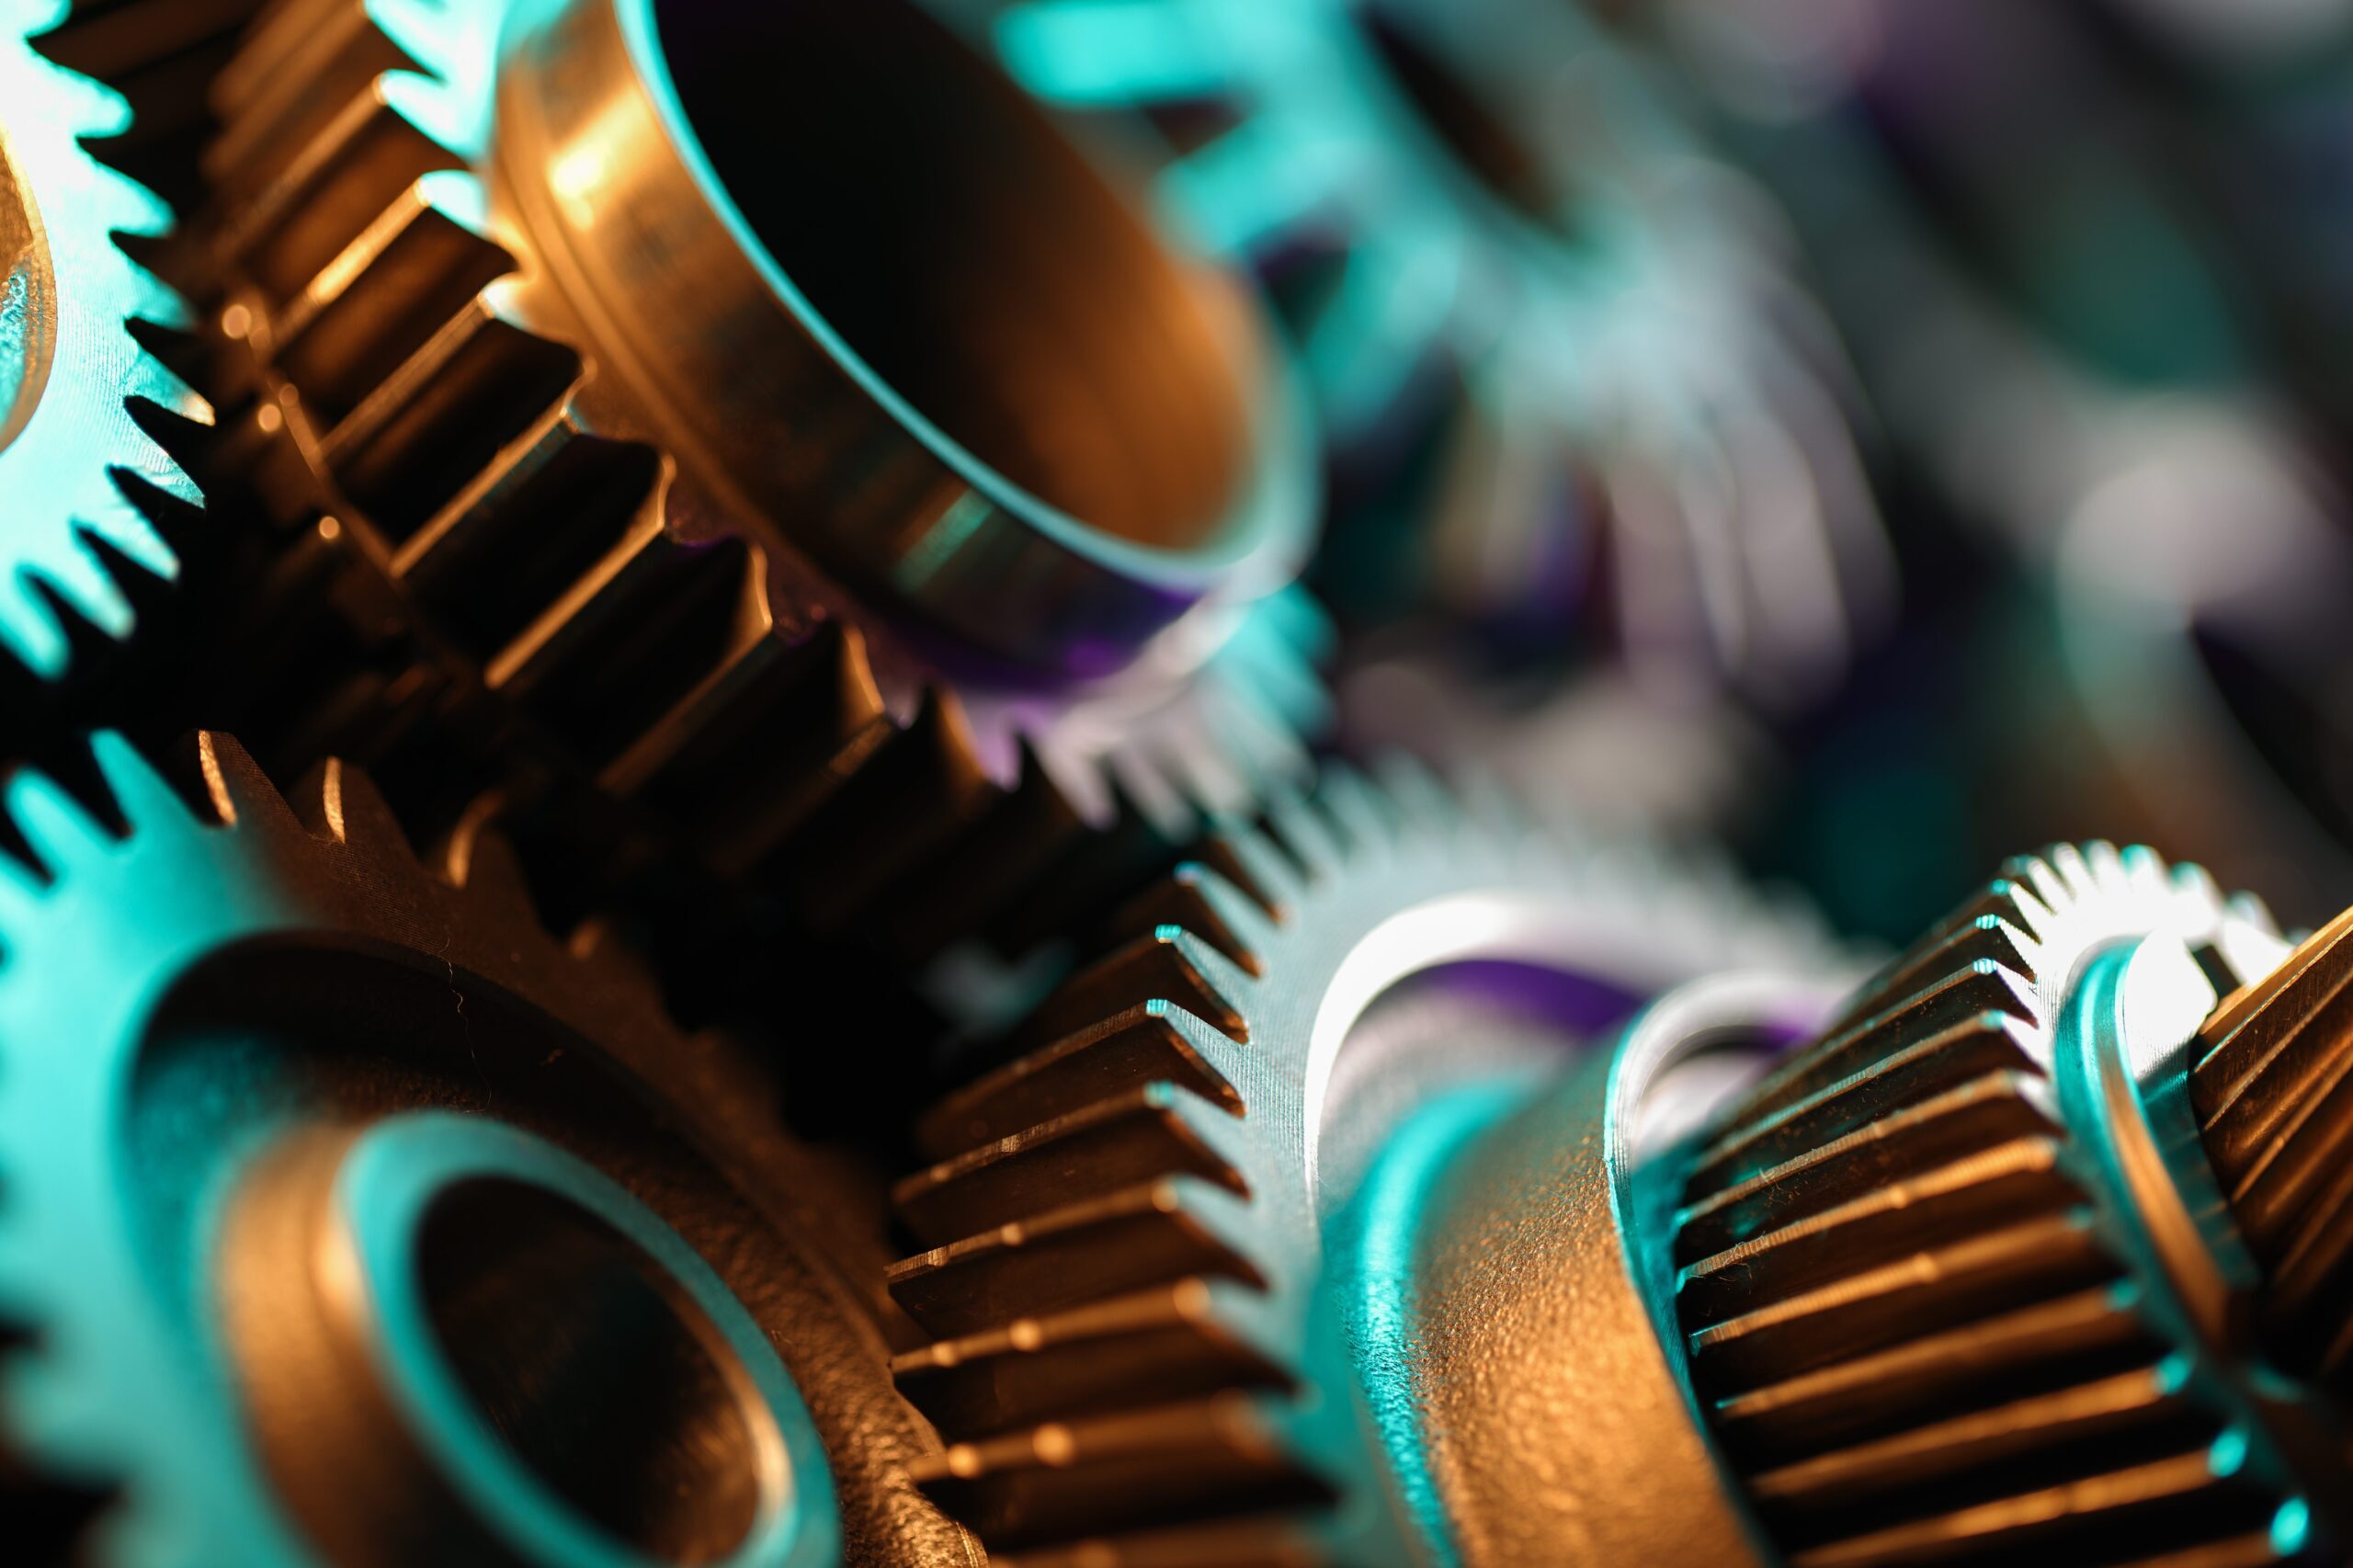 A close-up photo of gears in a machine